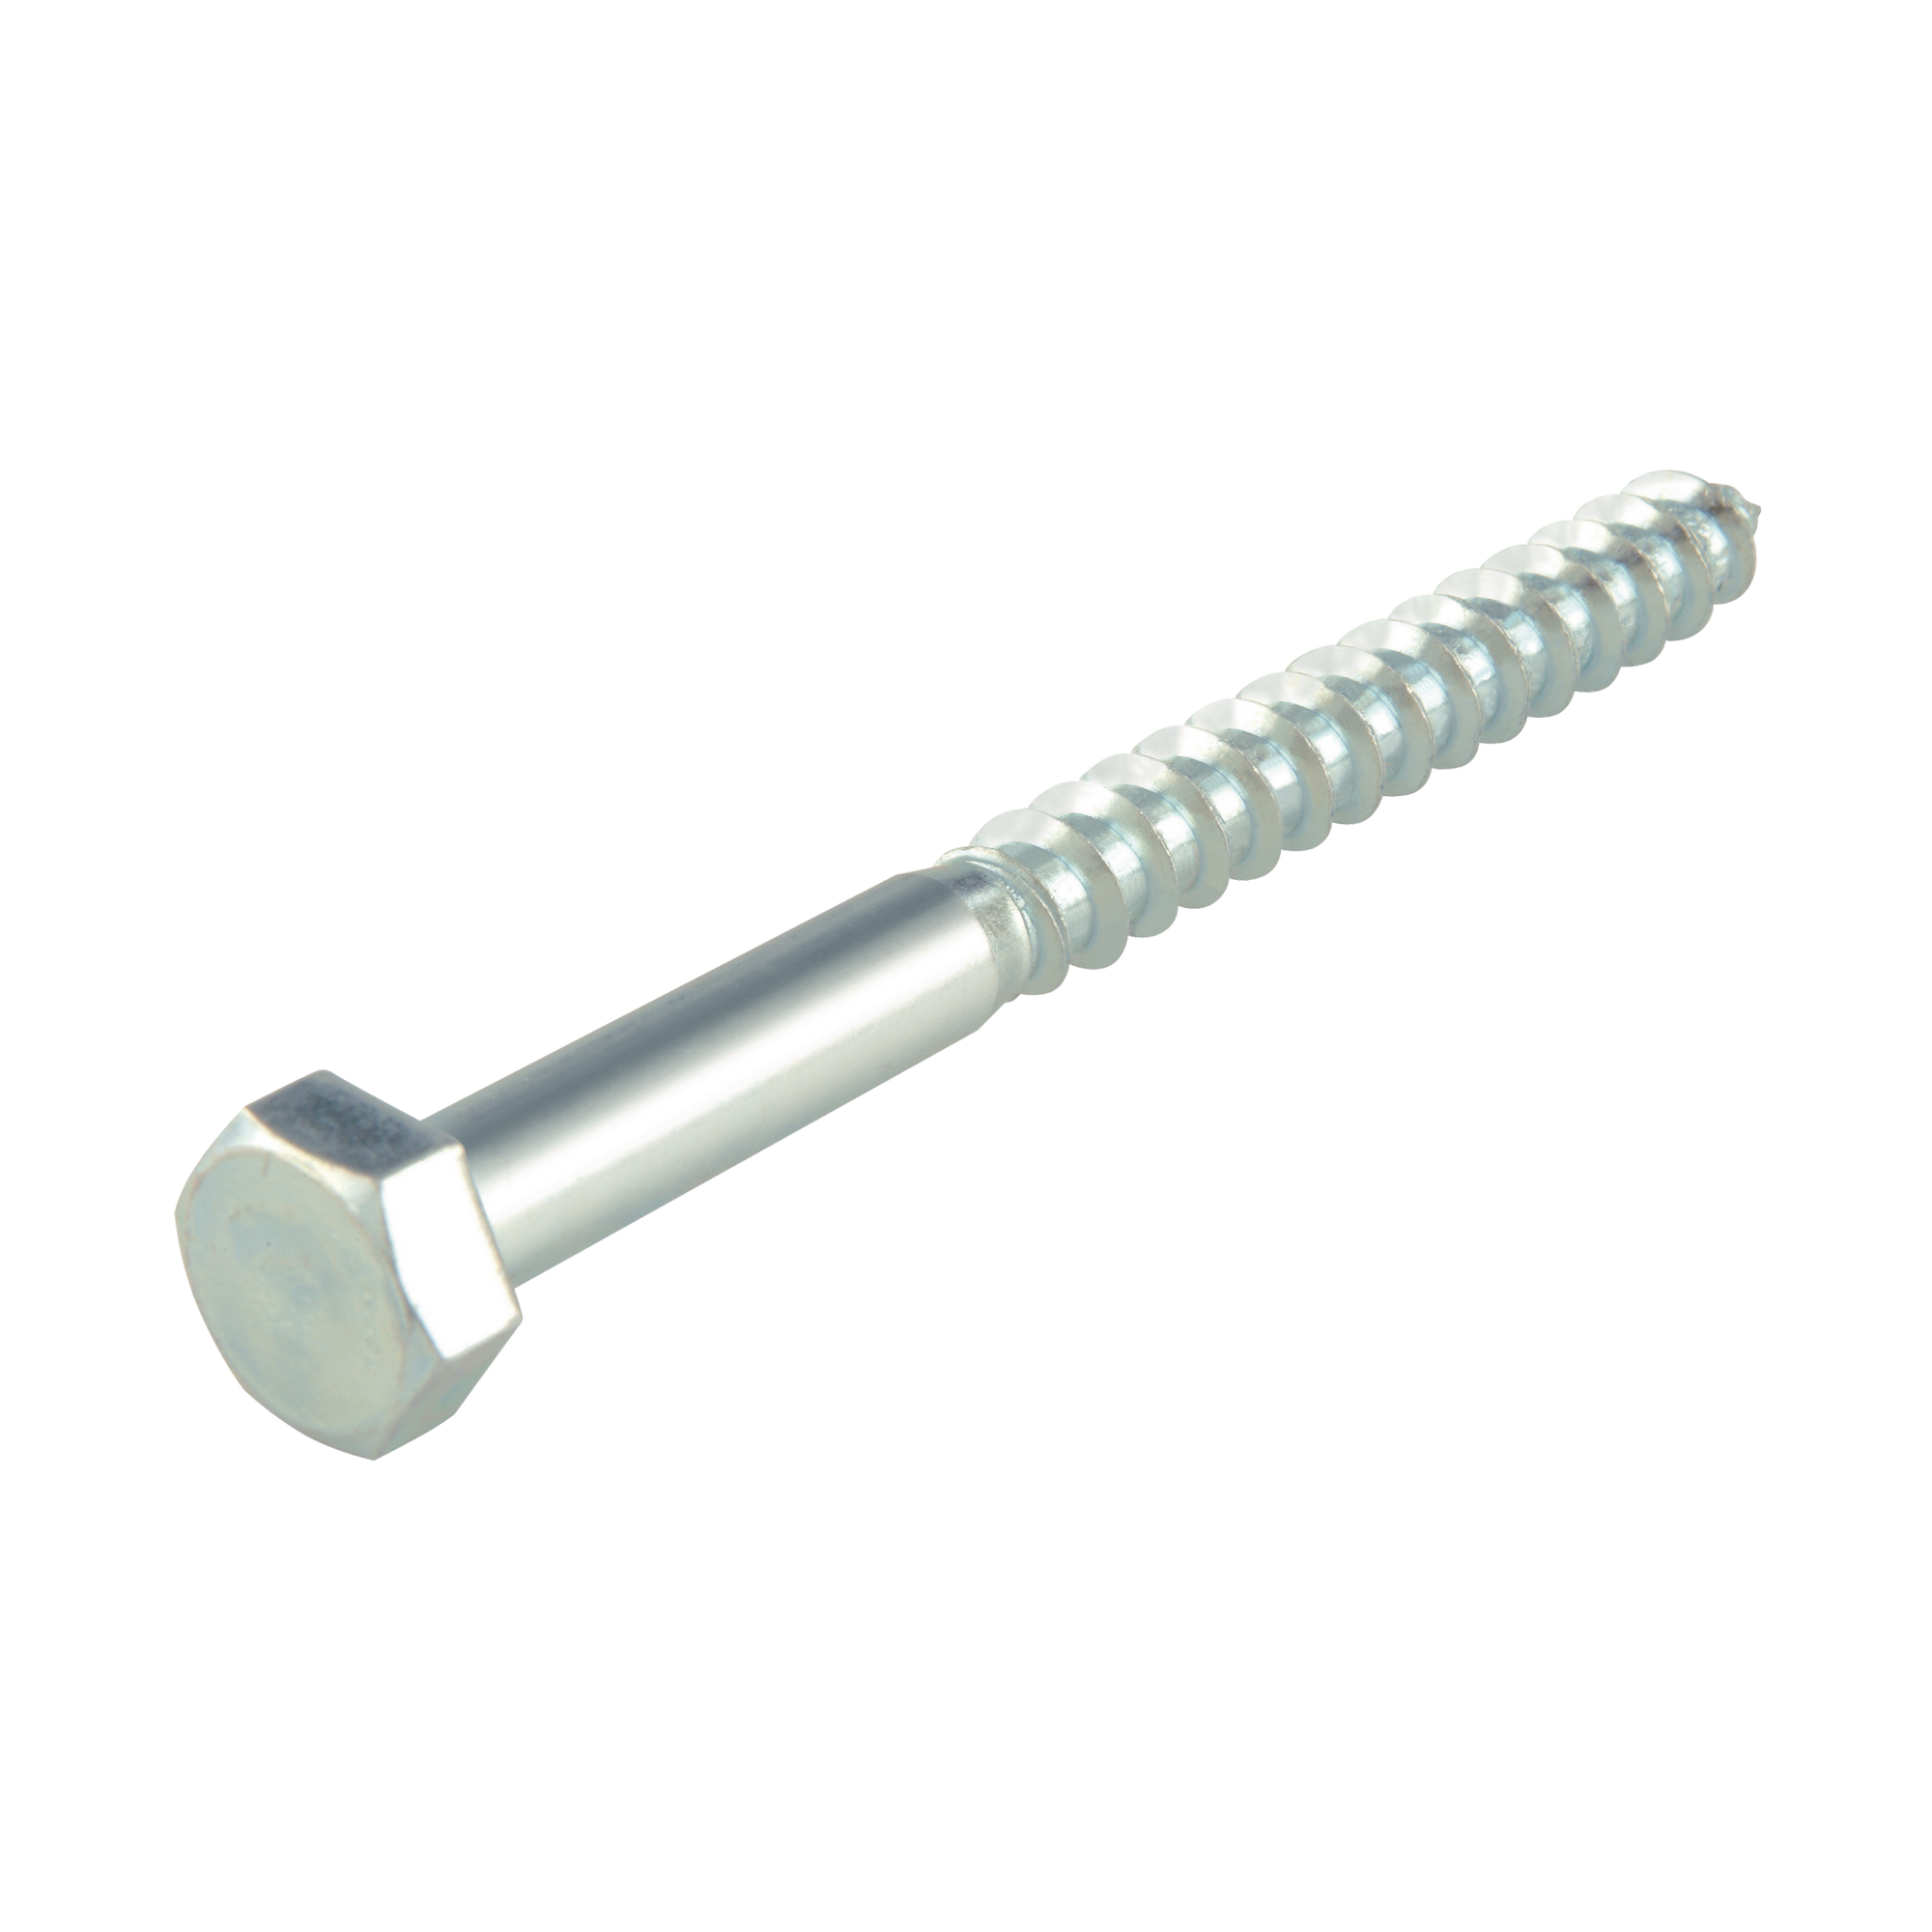 Schlüsselschrauben Stahl verzinkt Ø 10 x 140 mm TG DIN 571 4.8, 10 Stück + product picture